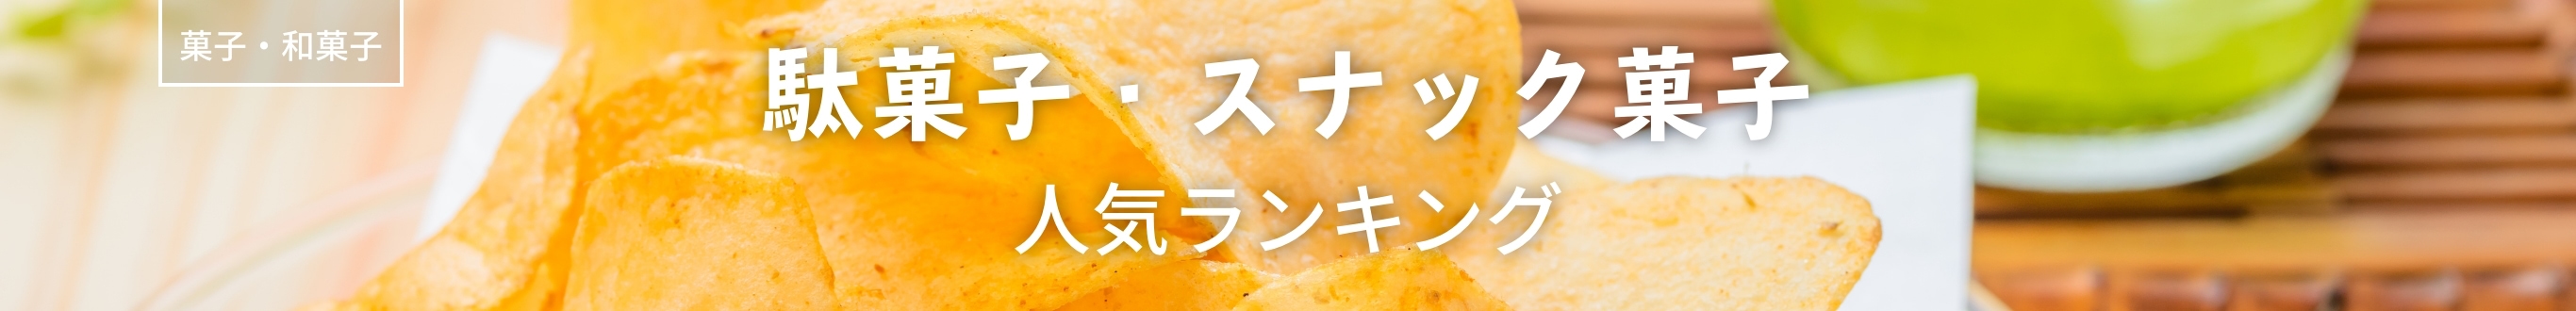 駄菓子・スナック菓子人気ランキング